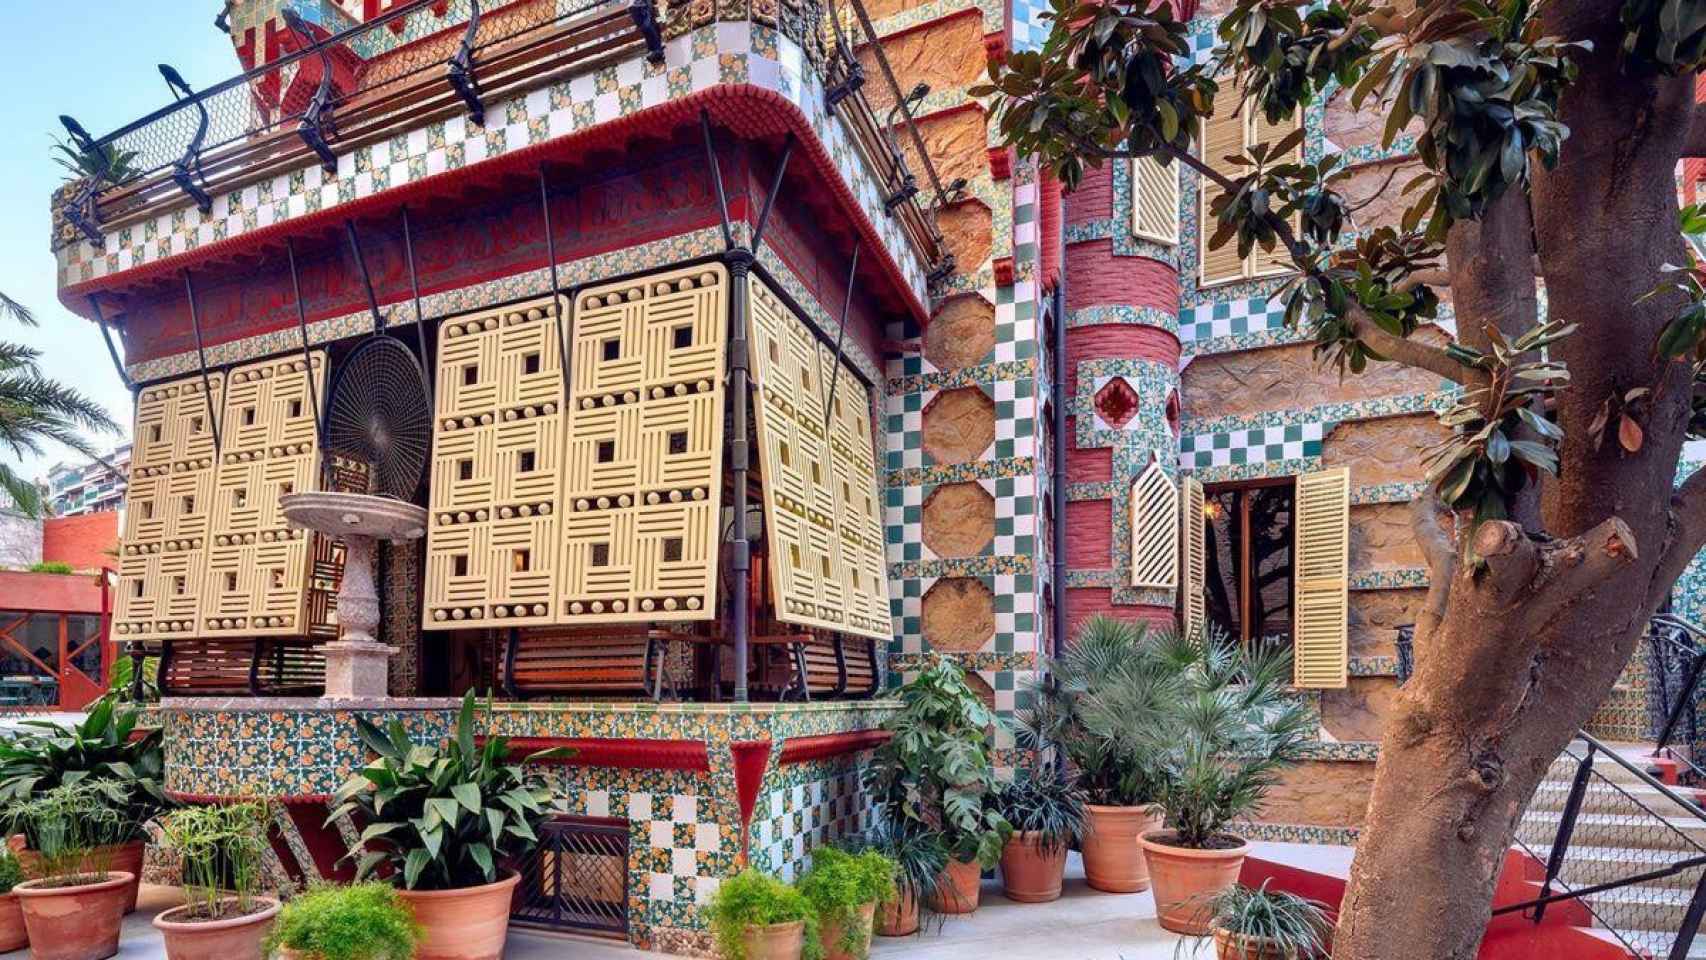 Imagen exterior de la Casa Vicens de Gaudí de Barcelona / CASA VICENS GAUDÍ